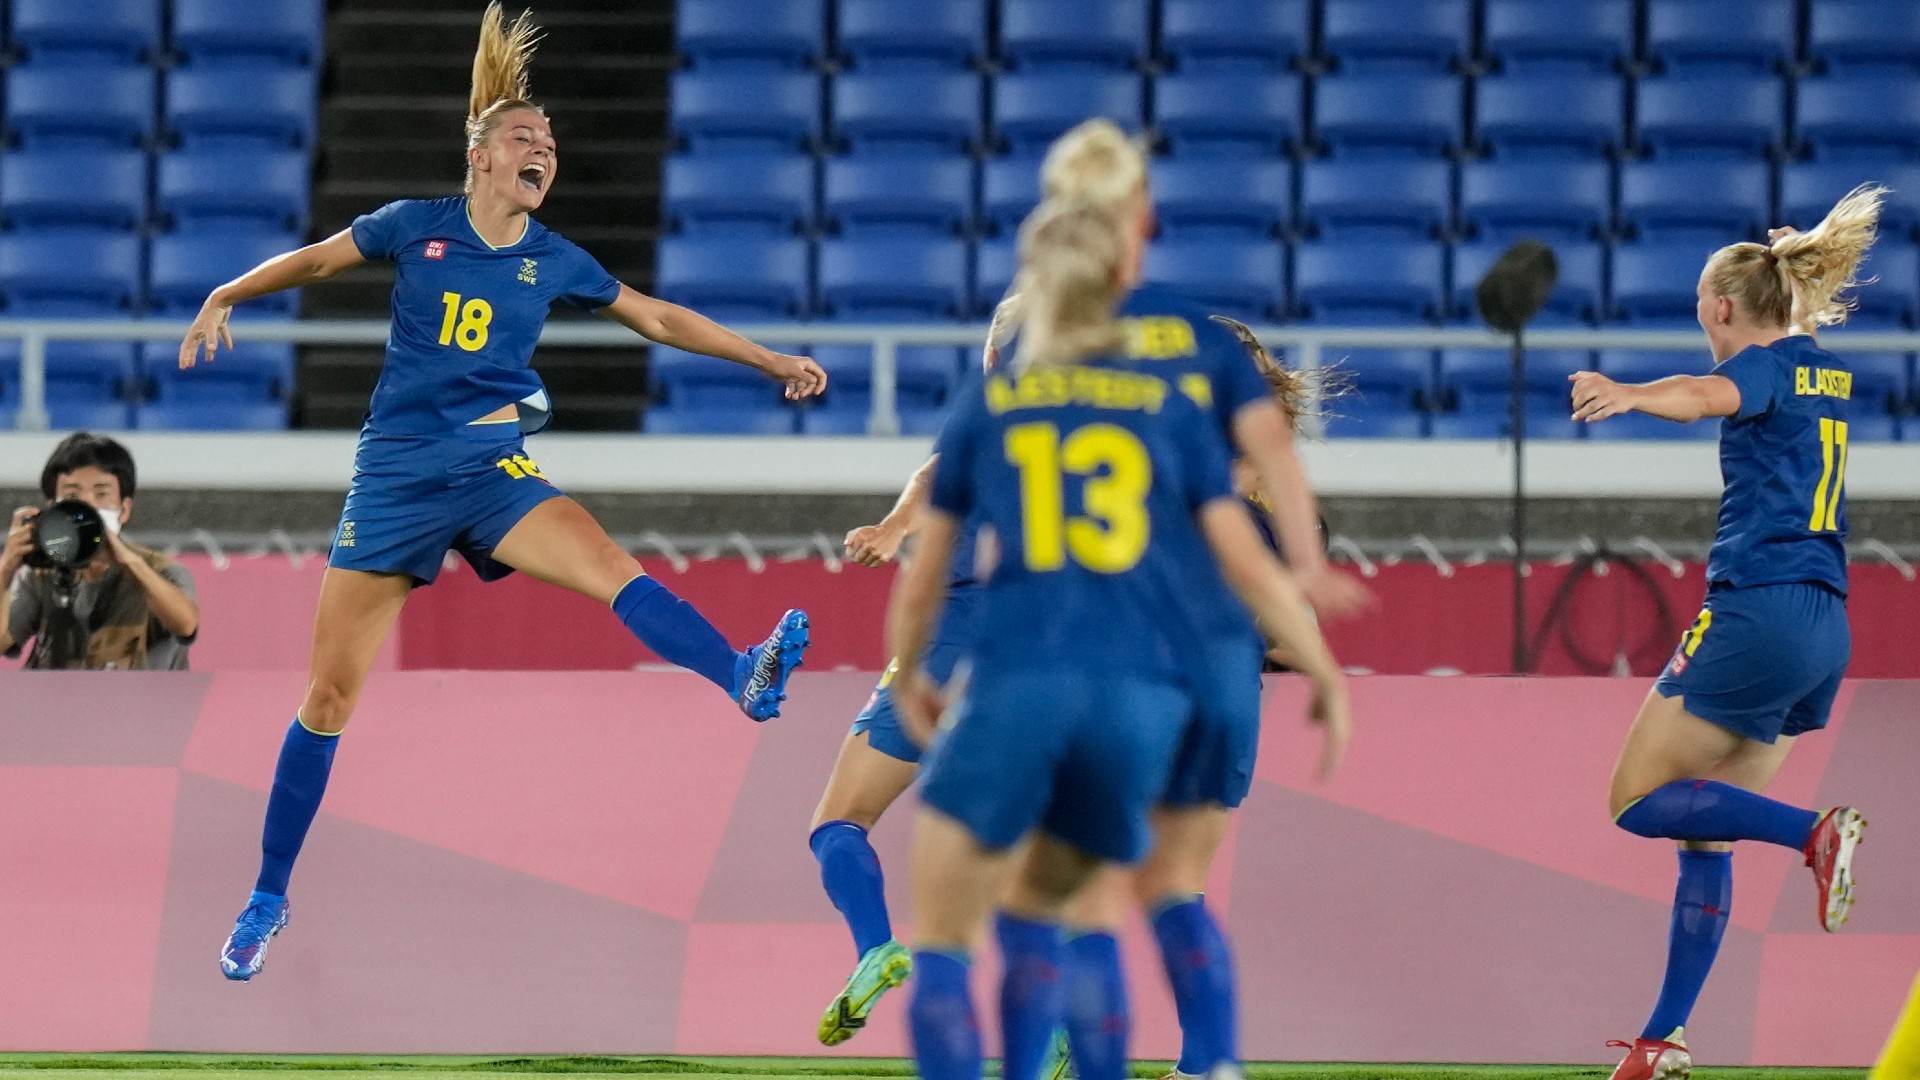 Suécia manteve 100% de aproveitamento, é favorita na final do futebol feminino